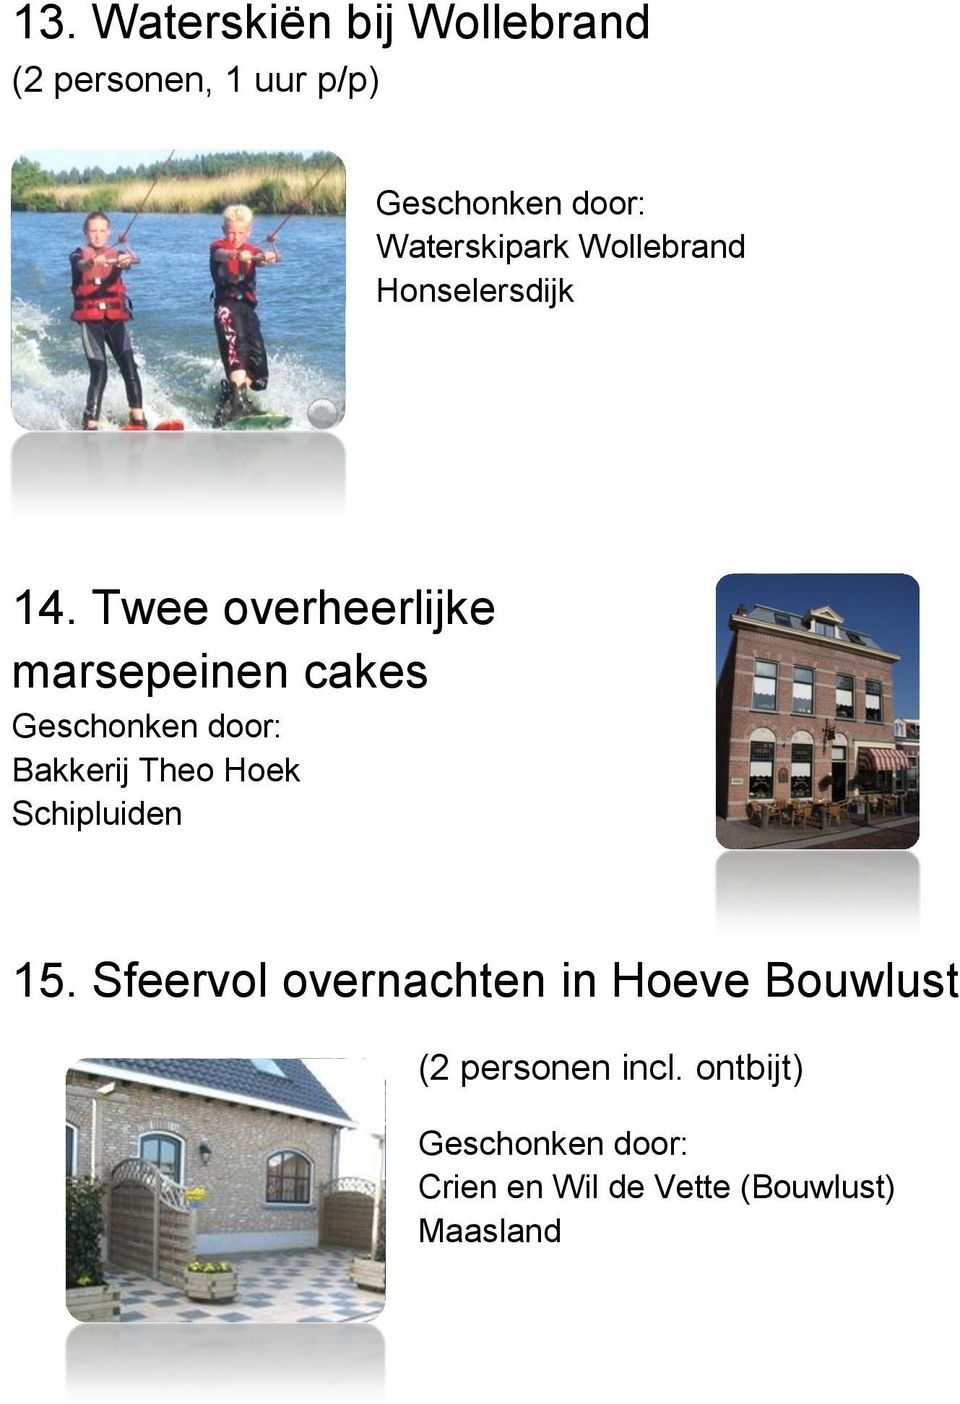 Twee overheerlijke marsepeinen cakes Bakkerij Theo Hoek 15.